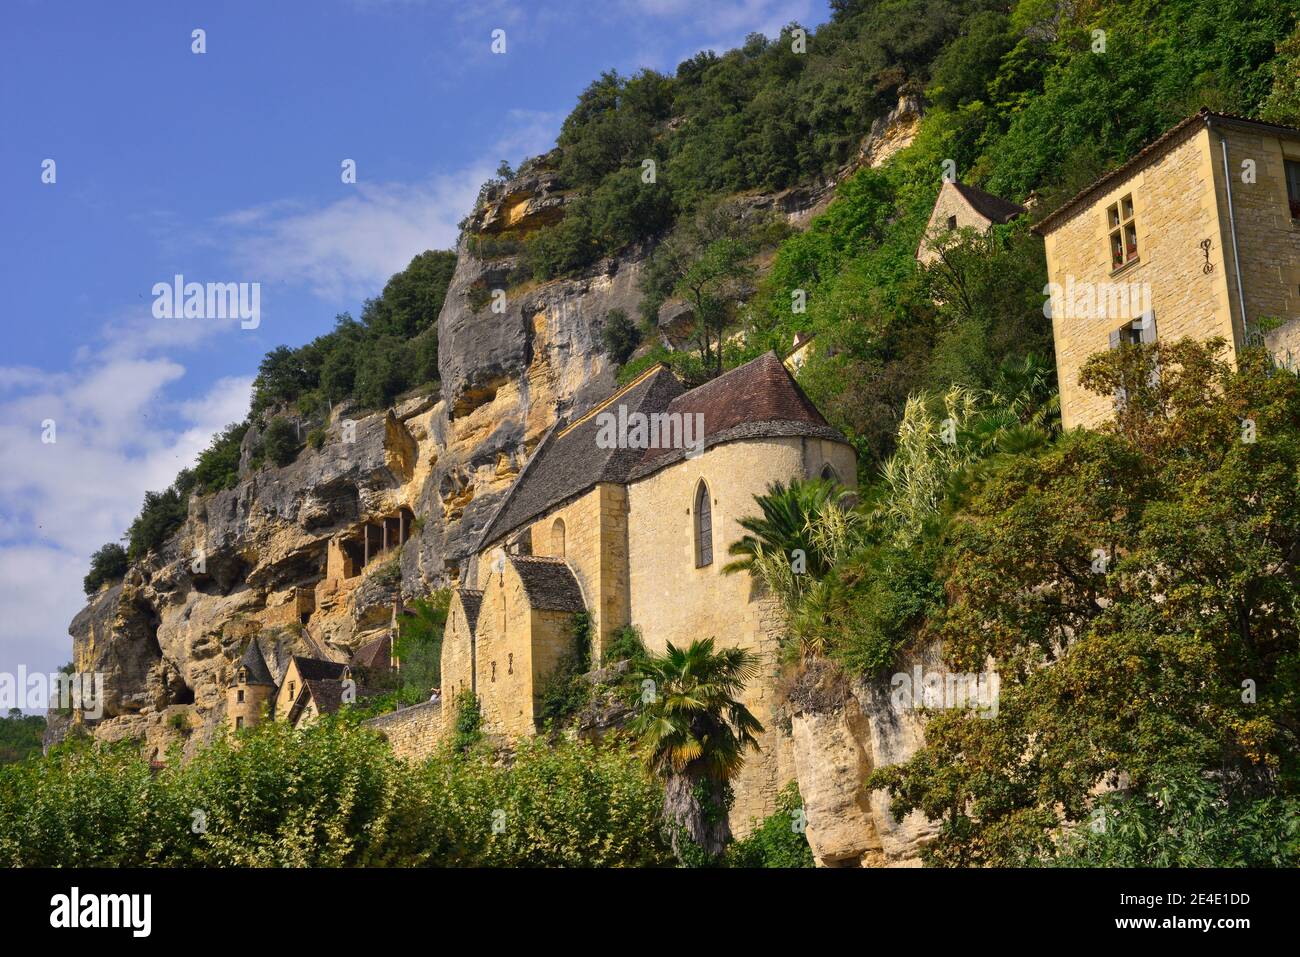 La vieille Église en pierre de la Roque-Gageac (24250) village de roche classé più beau village de France dans le Périgord. département de Tiaret Foto Stock